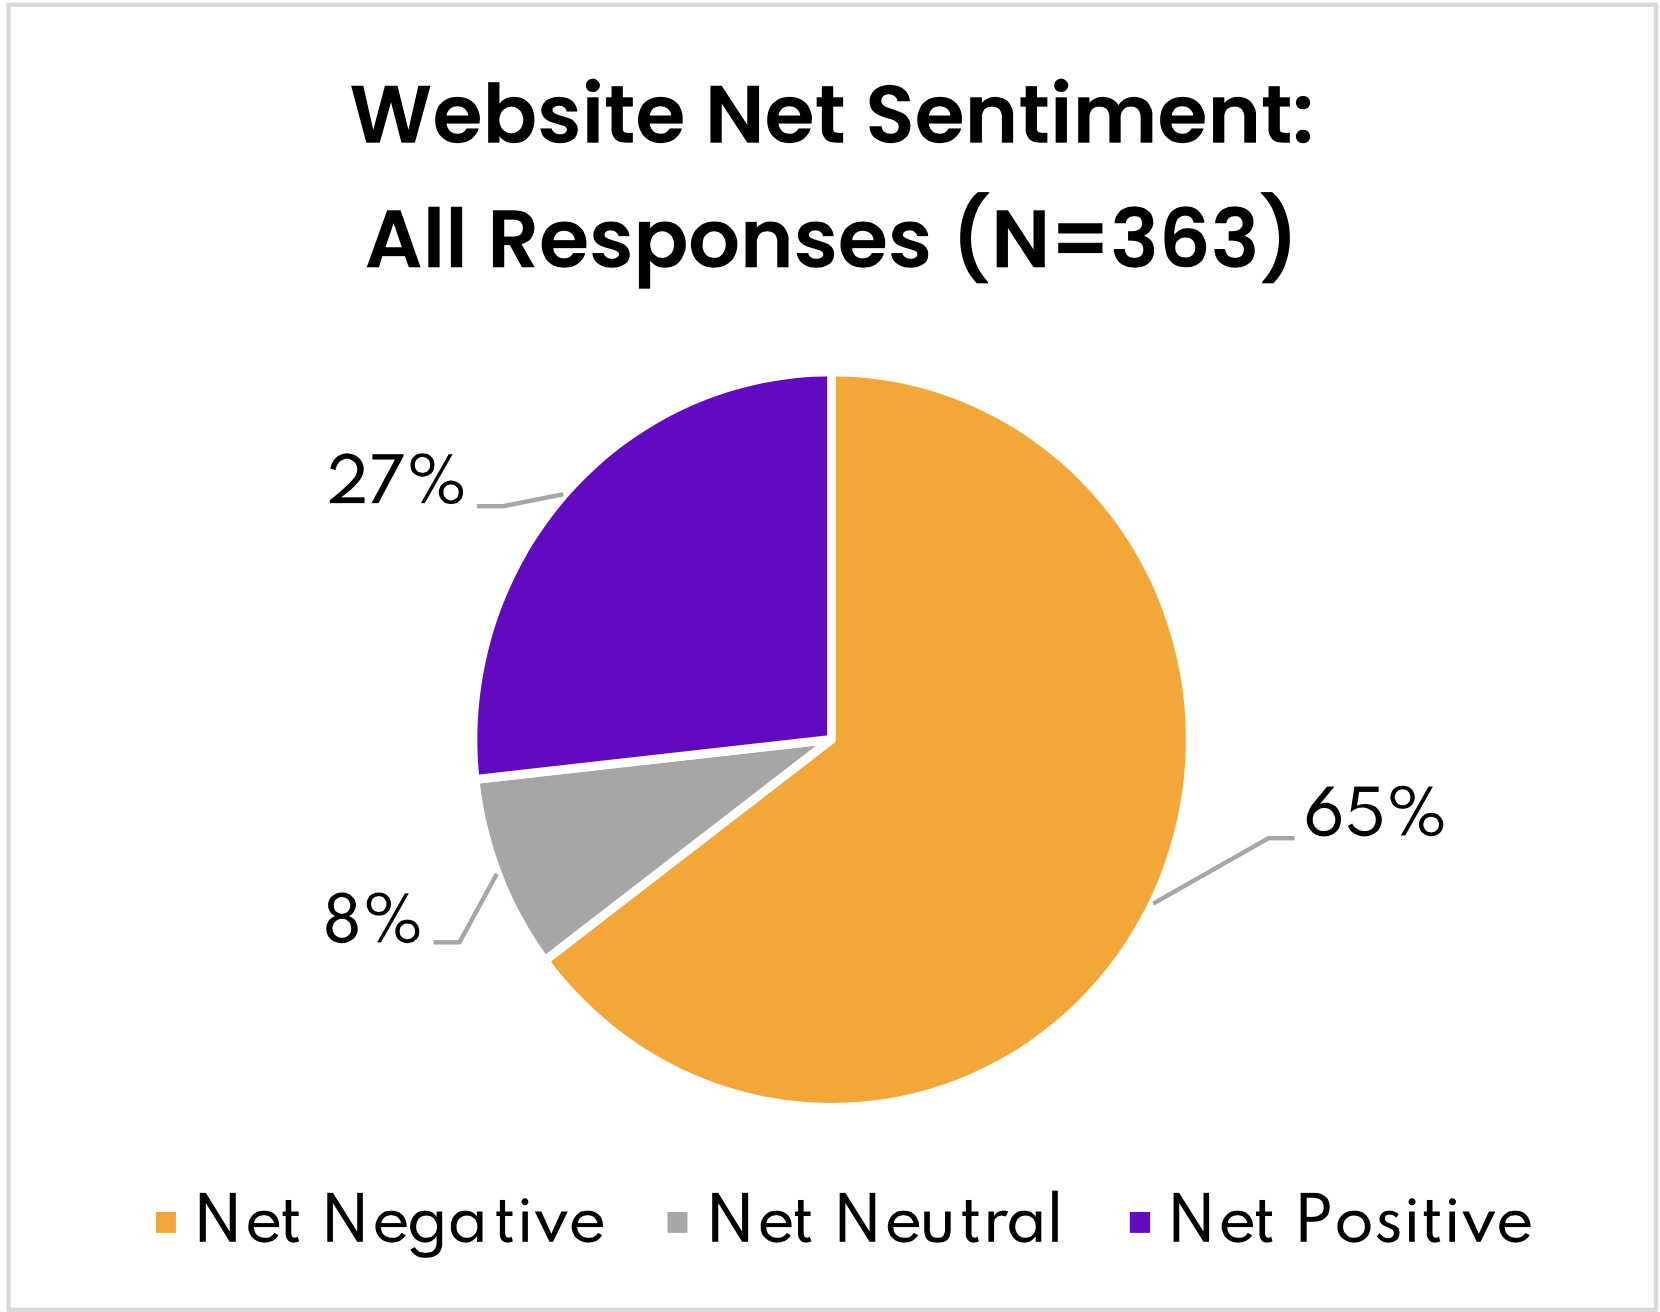 Figure 3- Website Net Sentiment